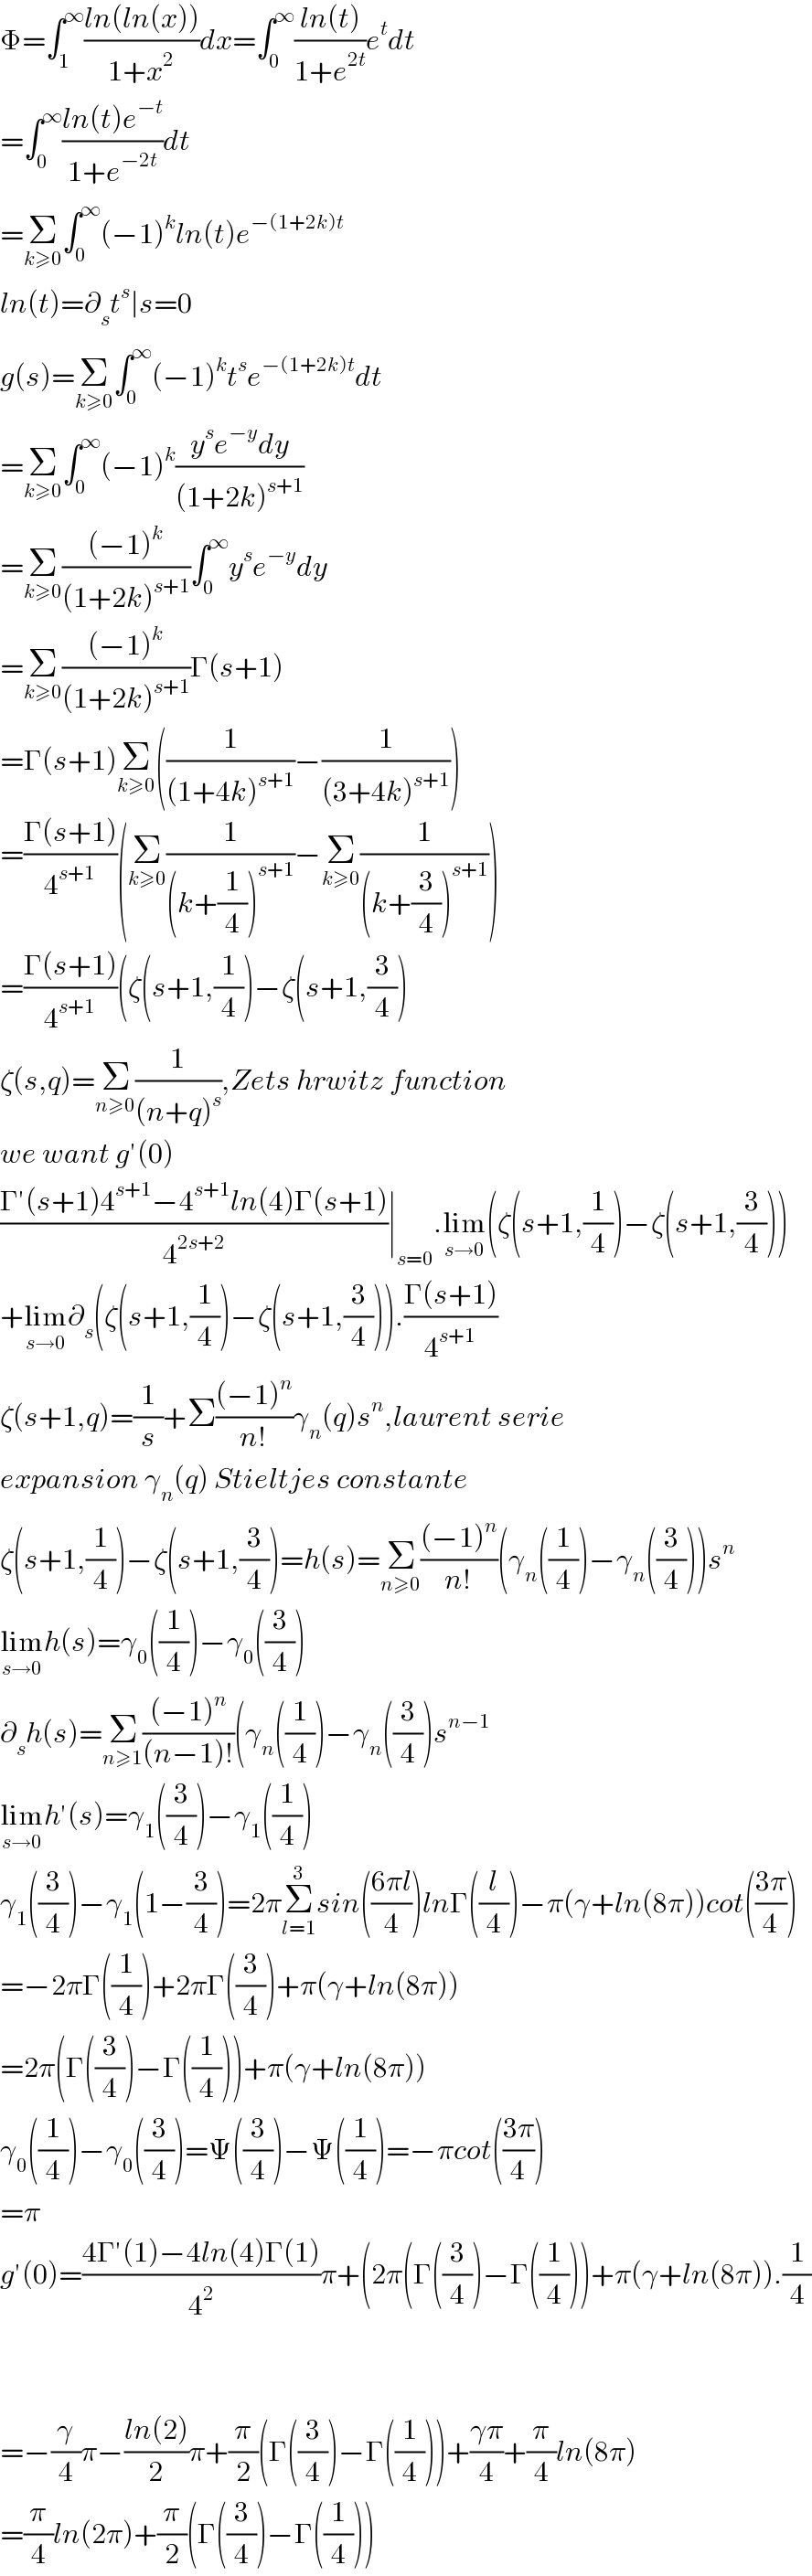 Φ=∫_1 ^∞ ((ln(ln(x)))/(1+x^2 ))dx=∫_0 ^∞ ((ln(t))/(1+e^(2t) ))e^t dt  =∫_0 ^∞ ((ln(t)e^(−t) )/(1+e^(−2t) ))dt  =Σ_(k≥0) ∫_0 ^∞ (−1)^k ln(t)e^(−(1+2k)t)   ln(t)=∂_s t^s ∣s=0  g(s)=Σ_(k≥0) ∫_0 ^∞ (−1)^k t^s e^(−(1+2k)t) dt  =Σ_(k≥0) ∫_0 ^∞ (−1)^k ((y^s e^(−y) dy)/((1+2k)^(s+1) ))  =Σ_(k≥0) (((−1)^k )/((1+2k)^(s+1) ))∫_0 ^∞ y^s e^(−y) dy  =Σ_(k≥0) (((−1)^k )/((1+2k)^(s+1) ))Γ(s+1)  =Γ(s+1)Σ_(k≥0) ((1/((1+4k)^(s+1) ))−(1/((3+4k)^(s+1) )))  =((Γ(s+1))/4^(s+1) )(Σ_(k≥0) (1/((k+(1/4))^(s+1) ))−Σ_(k≥0) (1/((k+(3/4))^(s+1) )))  =((Γ(s+1))/4^(s+1) )(ζ(s+1,(1/4))−ζ(s+1,(3/4))  ζ(s,q)=Σ_(n≥0) (1/((n+q)^s )),Zets hrwitz function  we want g′(0)  ((Γ′(s+1)4^(s+1) −4^(s+1) ln(4)Γ(s+1))/4^(2s+2) )∣_(s=0) .lim_(s→0) (ζ(s+1,(1/4))−ζ(s+1,(3/4)))  +lim_(s→0) ∂_s (ζ(s+1,(1/4))−ζ(s+1,(3/4))).((Γ(s+1))/4^(s+1) )  ζ(s+1,q)=(1/s)+Σ(((−1)^n )/(n!))γ_n (q)s^n ,laurent serie  expansion γ_n (q) Stieltjes constante  ζ(s+1,(1/4))−ζ(s+1,(3/4))=h(s)=Σ_(n≥0) (((−1)^n )/(n!))(γ_n ((1/4))−γ_n ((3/4)))s^n   lim_(s→0) h(s)=γ_0 ((1/4))−γ_0 ((3/4))  ∂_s h(s)=Σ_(n≥1) (((−1)^n )/((n−1)!))(γ_n ((1/4))−γ_n ((3/4))s^(n−1)   lim_(s→0) h′(s)=γ_1 ((3/4))−γ_1 ((1/4))  γ_1 ((3/4))−γ_1 (1−(3/4))=2πΣ_(l=1) ^3 sin(((6πl)/4))lnΓ((l/4))−π(γ+ln(8π))cot(((3π)/4))  =−2πΓ((1/4))+2πΓ((3/4))+π(γ+ln(8π))  =2π(Γ((3/4))−Γ((1/4)))+π(γ+ln(8π))  γ_0 ((1/4))−γ_0 ((3/4))=Ψ((3/4))−Ψ((1/4))=−πcot(((3π)/4))  =π  g′(0)=((4Γ′(1)−4ln(4)Γ(1))/4^2 )π+(2π(Γ((3/4))−Γ((1/4)))+π(γ+ln(8π)).(1/4)      =−(γ/4)π−((ln(2))/2)π+(π/2)(Γ((3/4))−Γ((1/4)))+((γπ)/4)+(π/4)ln(8π)  =(π/4)ln(2π)+(π/2)(Γ((3/4))−Γ((1/4)))  